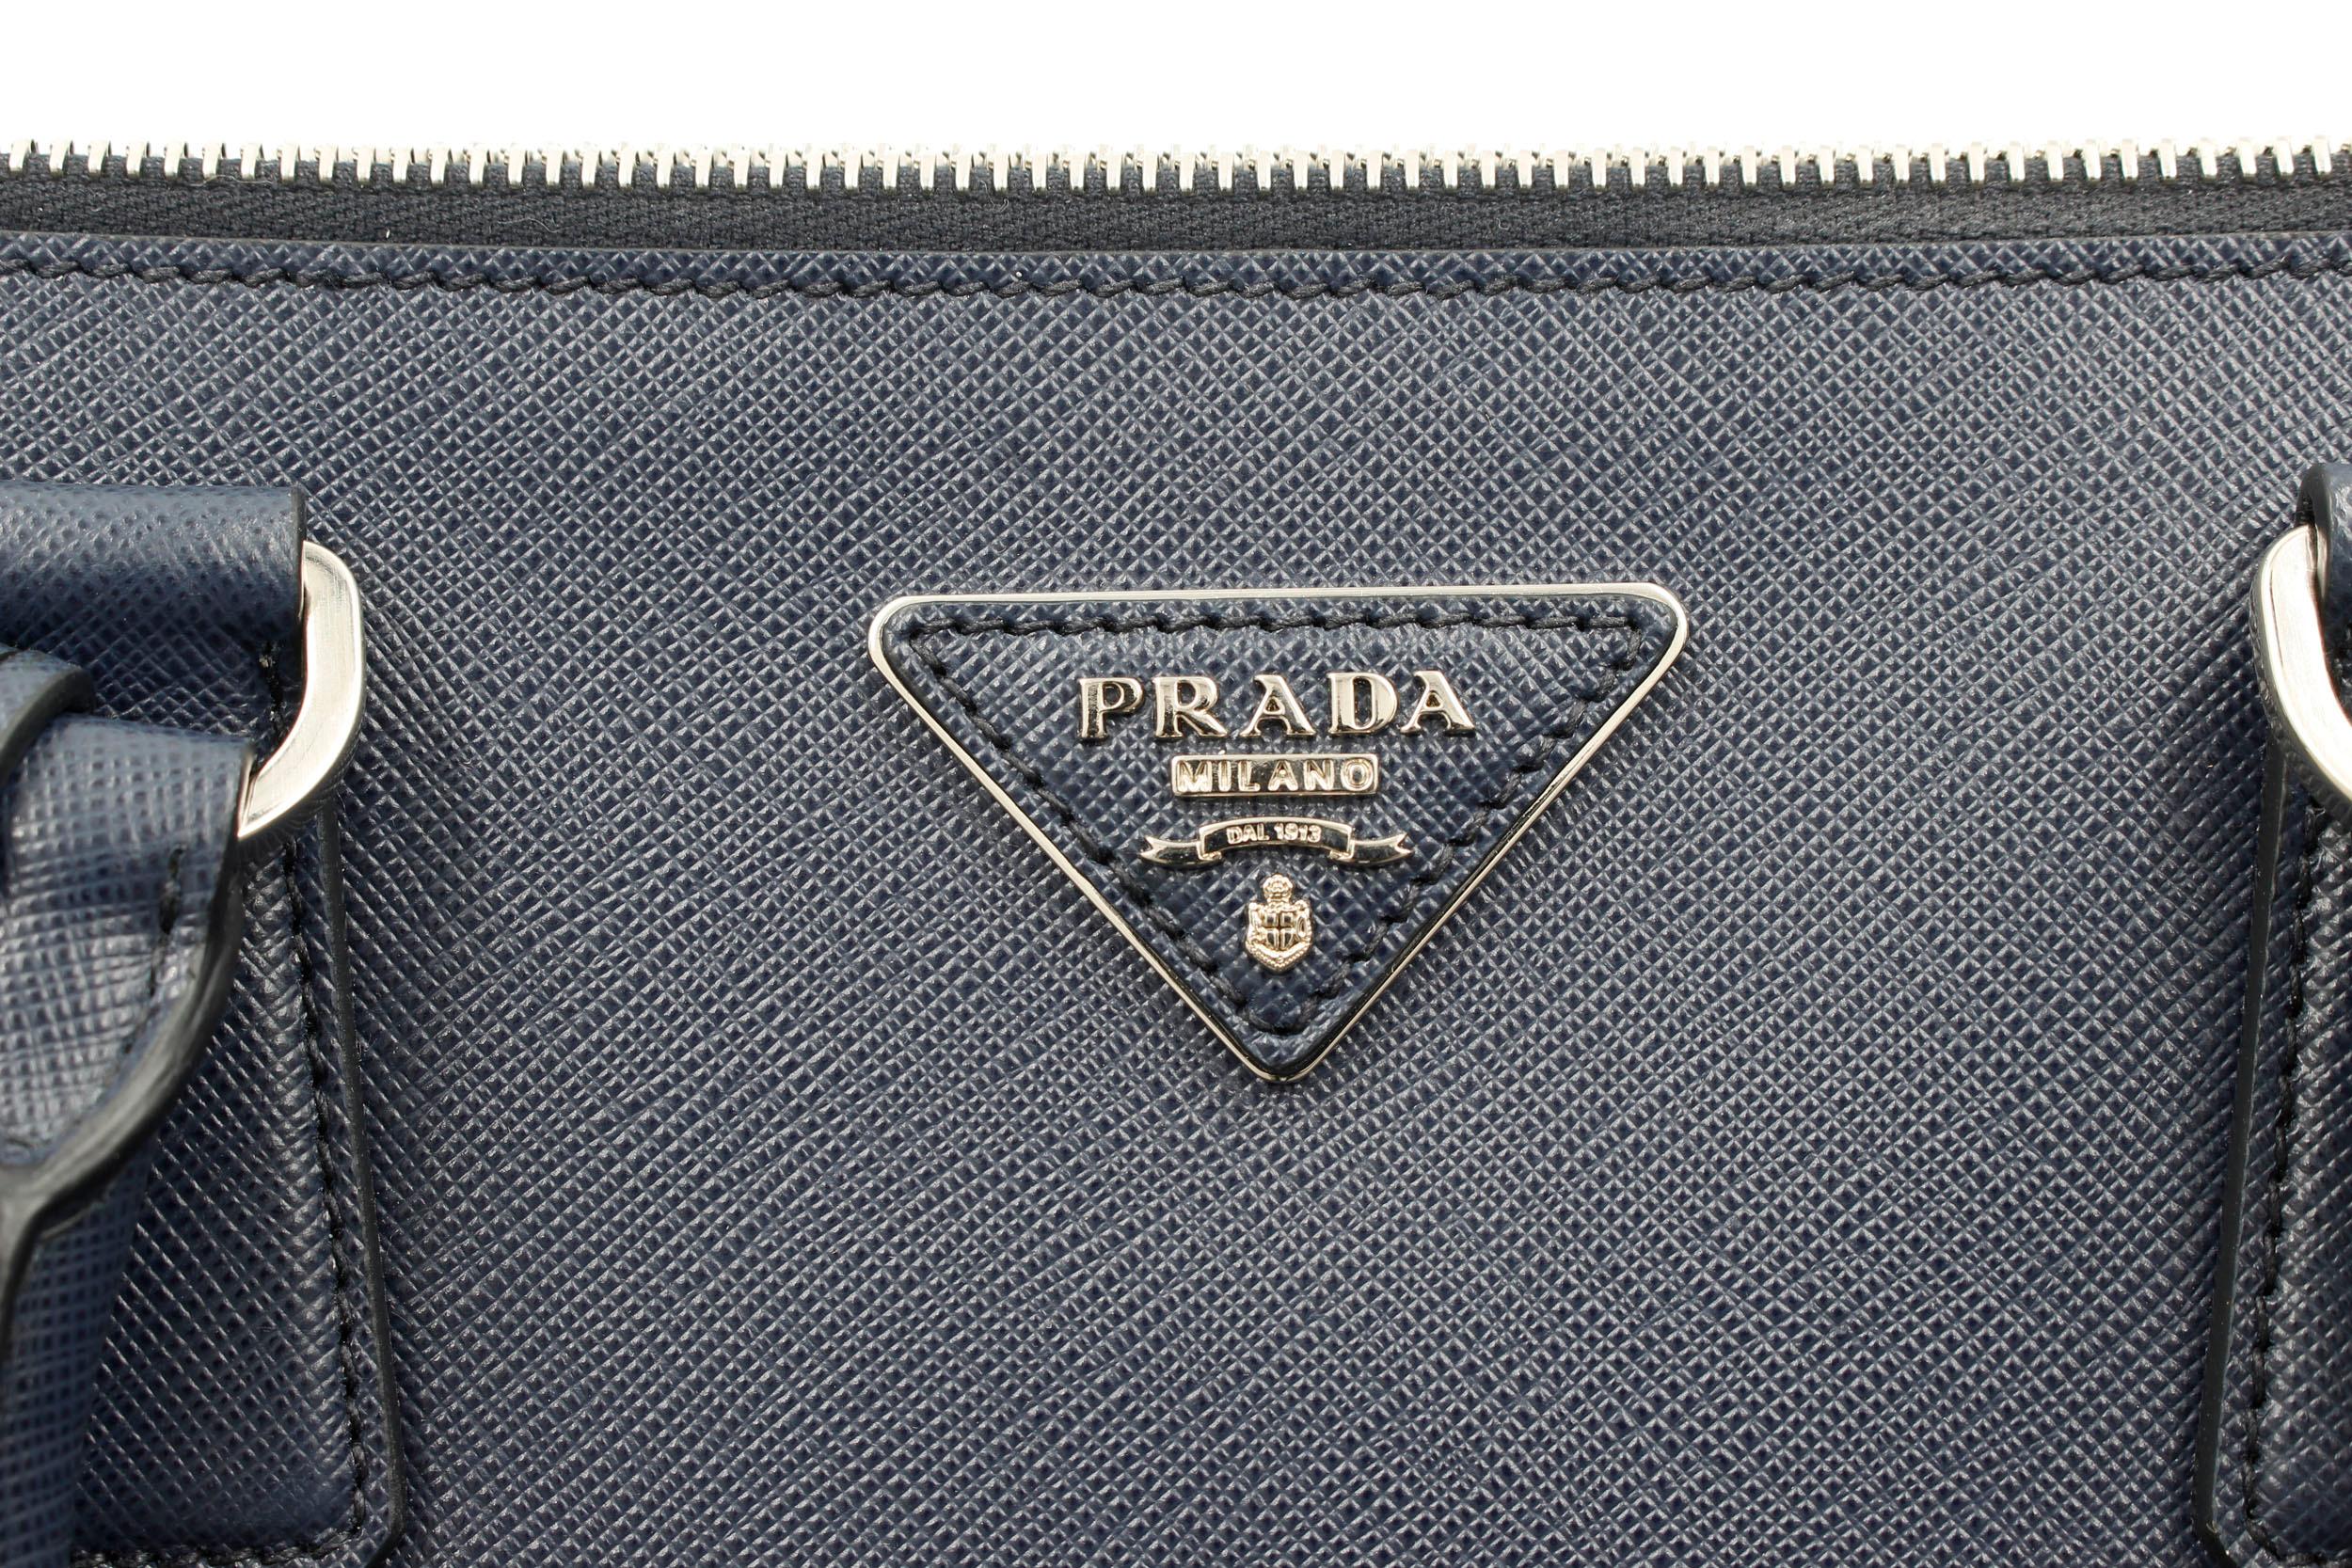 Black Prada Galleria Saffiano Leather Bag 1BA274 Navy Blue